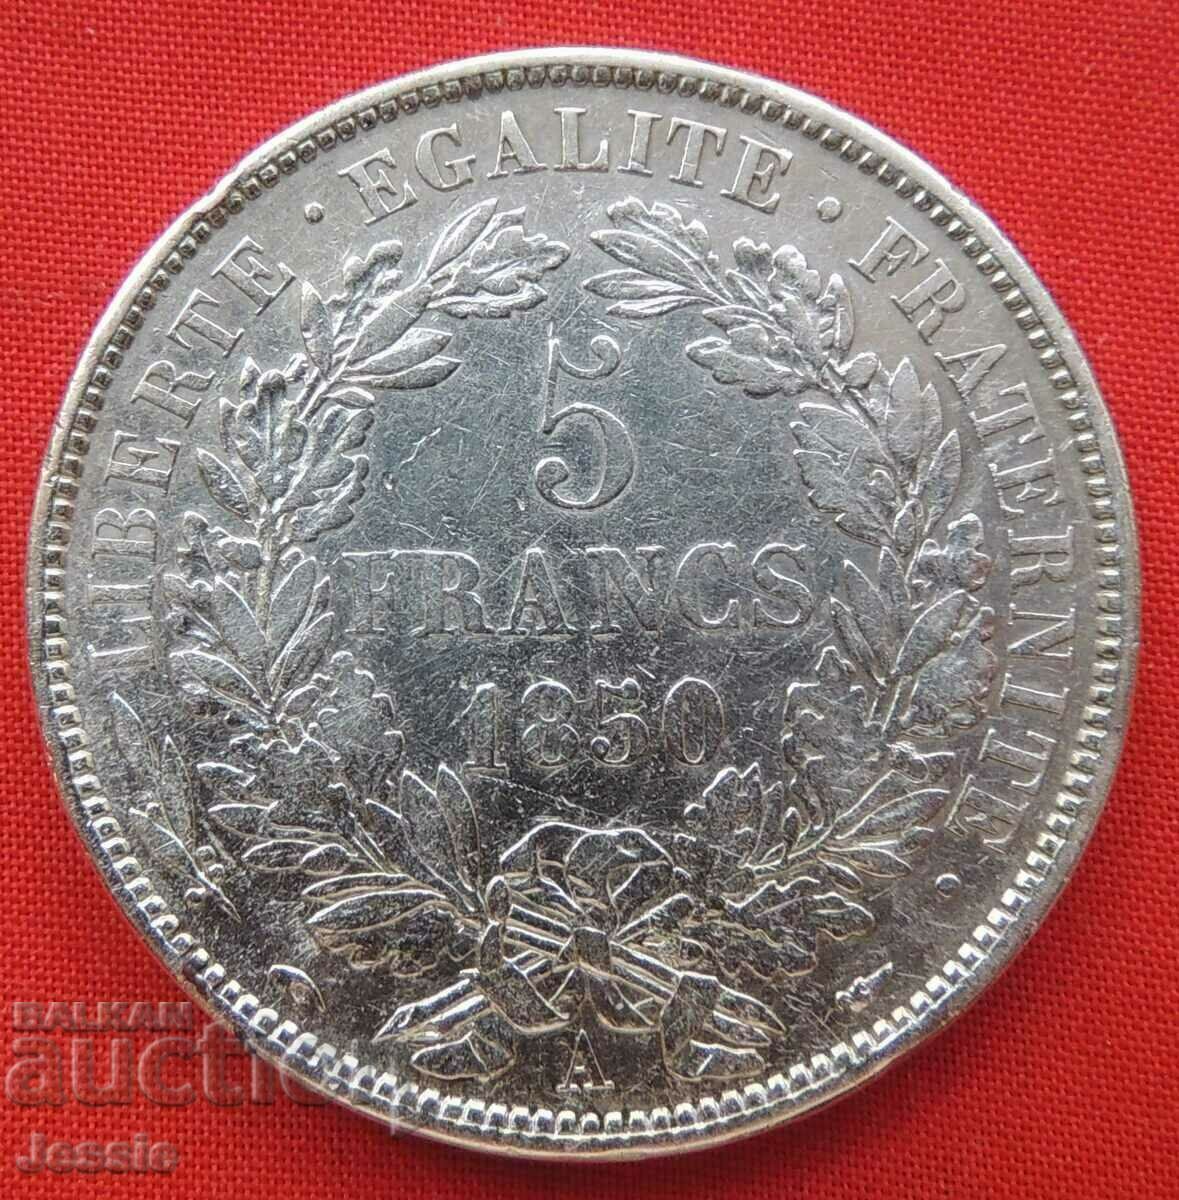 5 Francs 1850 A silver France